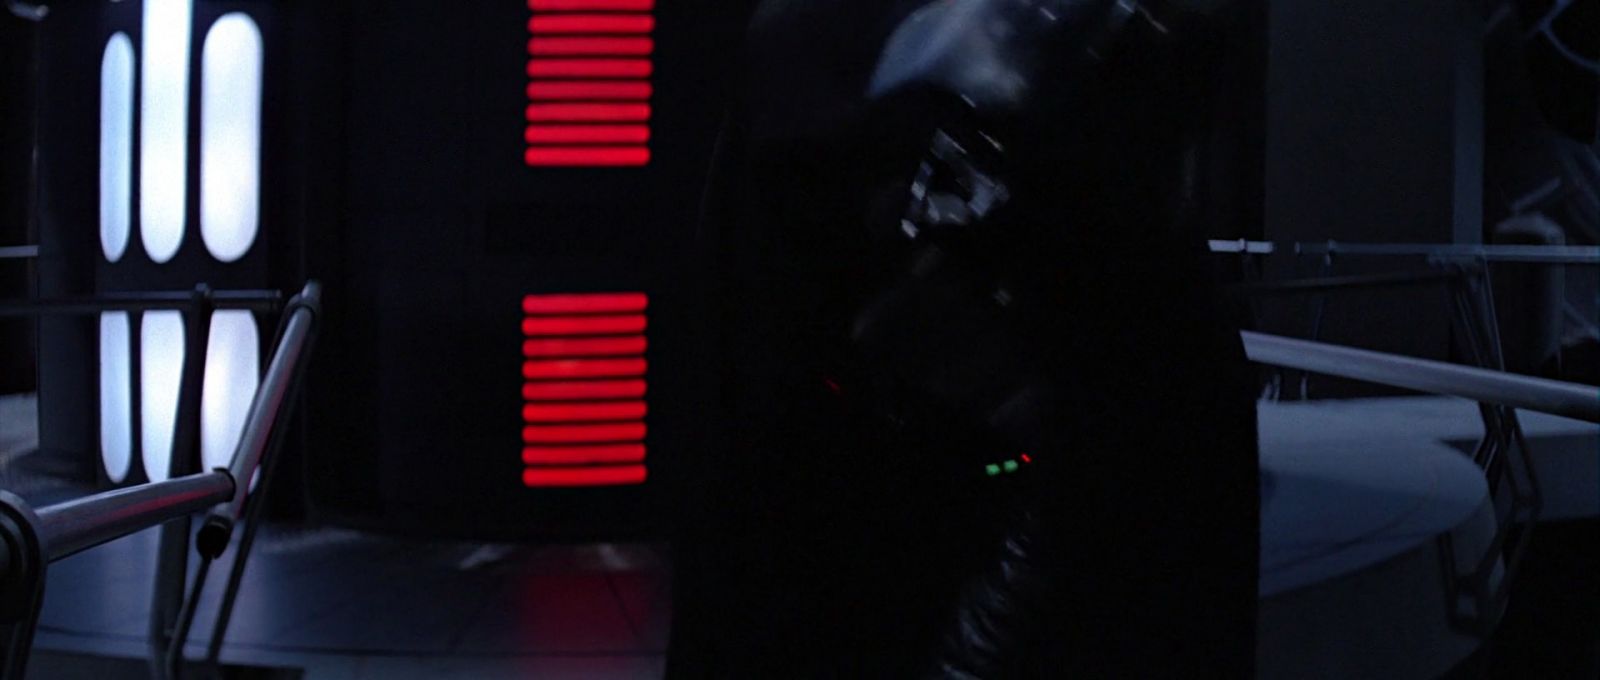 ROTJ-Vader-13612.jpg